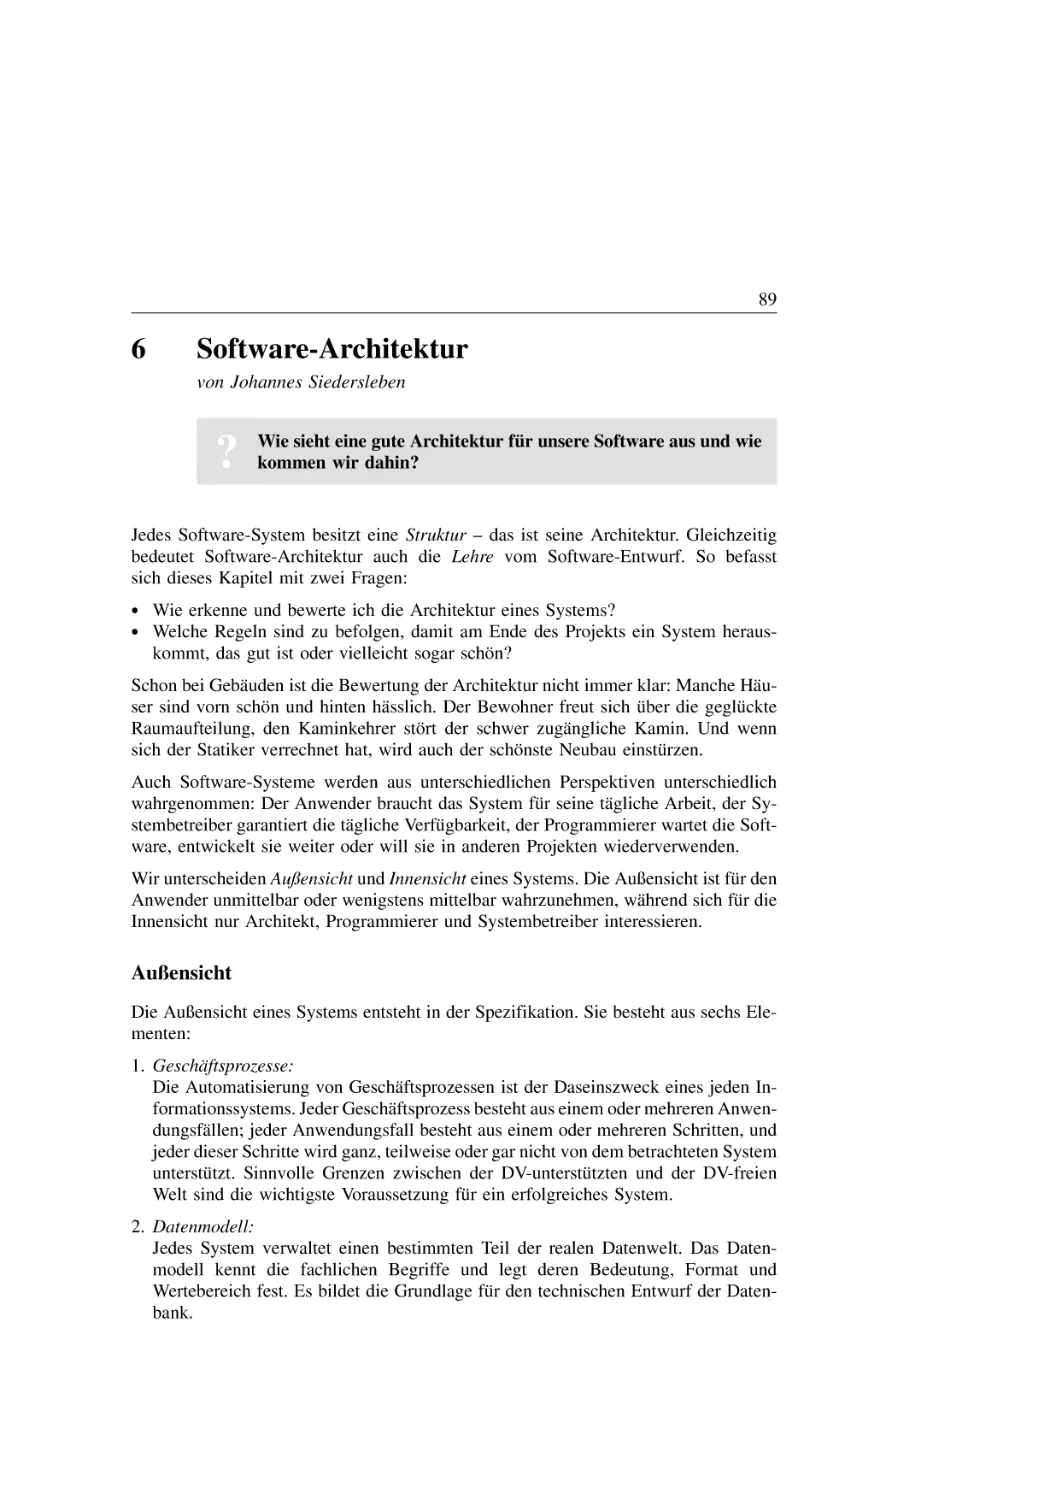 6. Software-Architektur